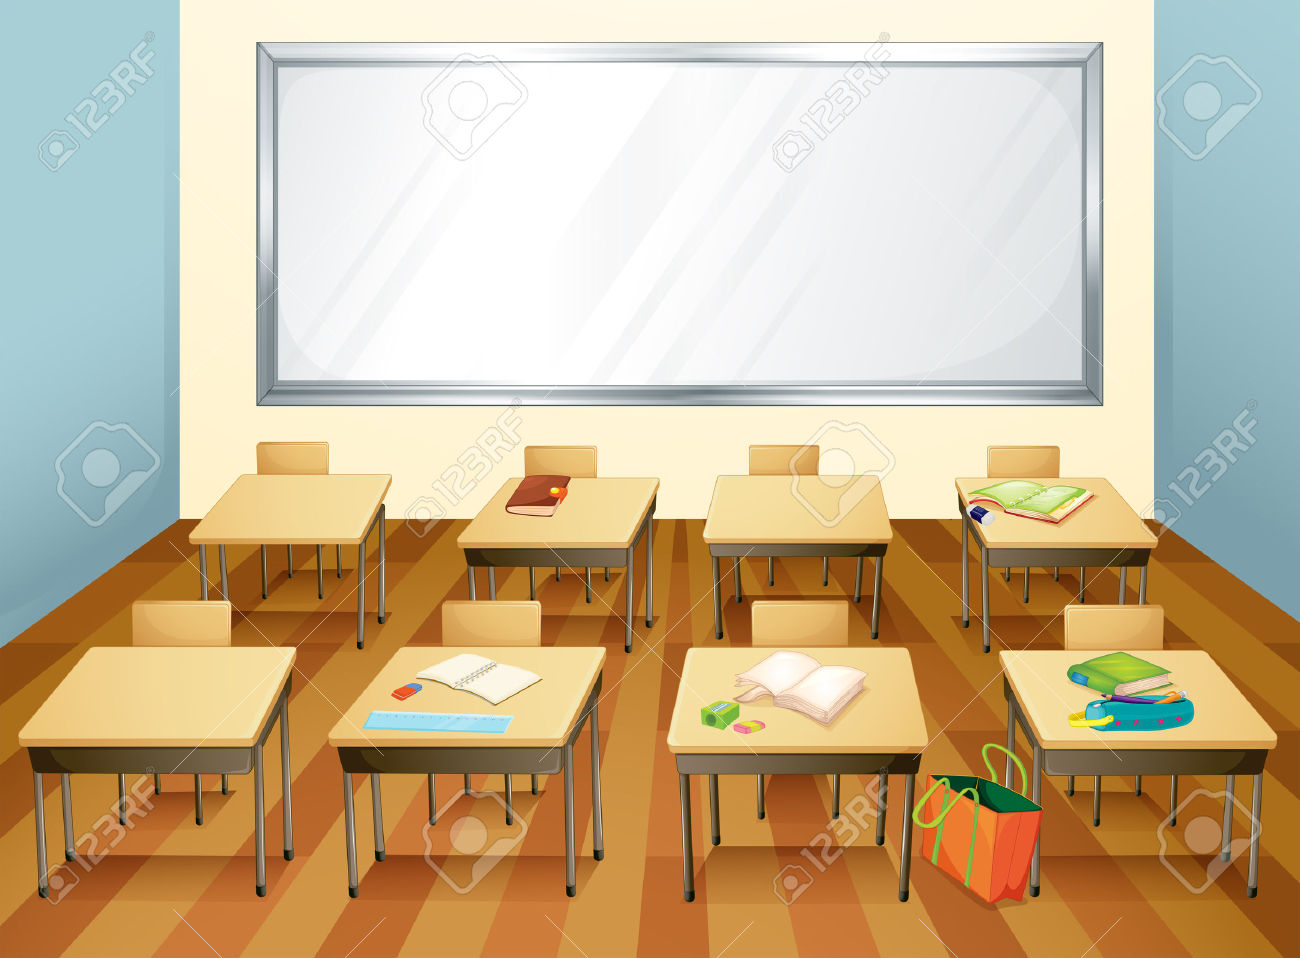 Empty classroom clipart